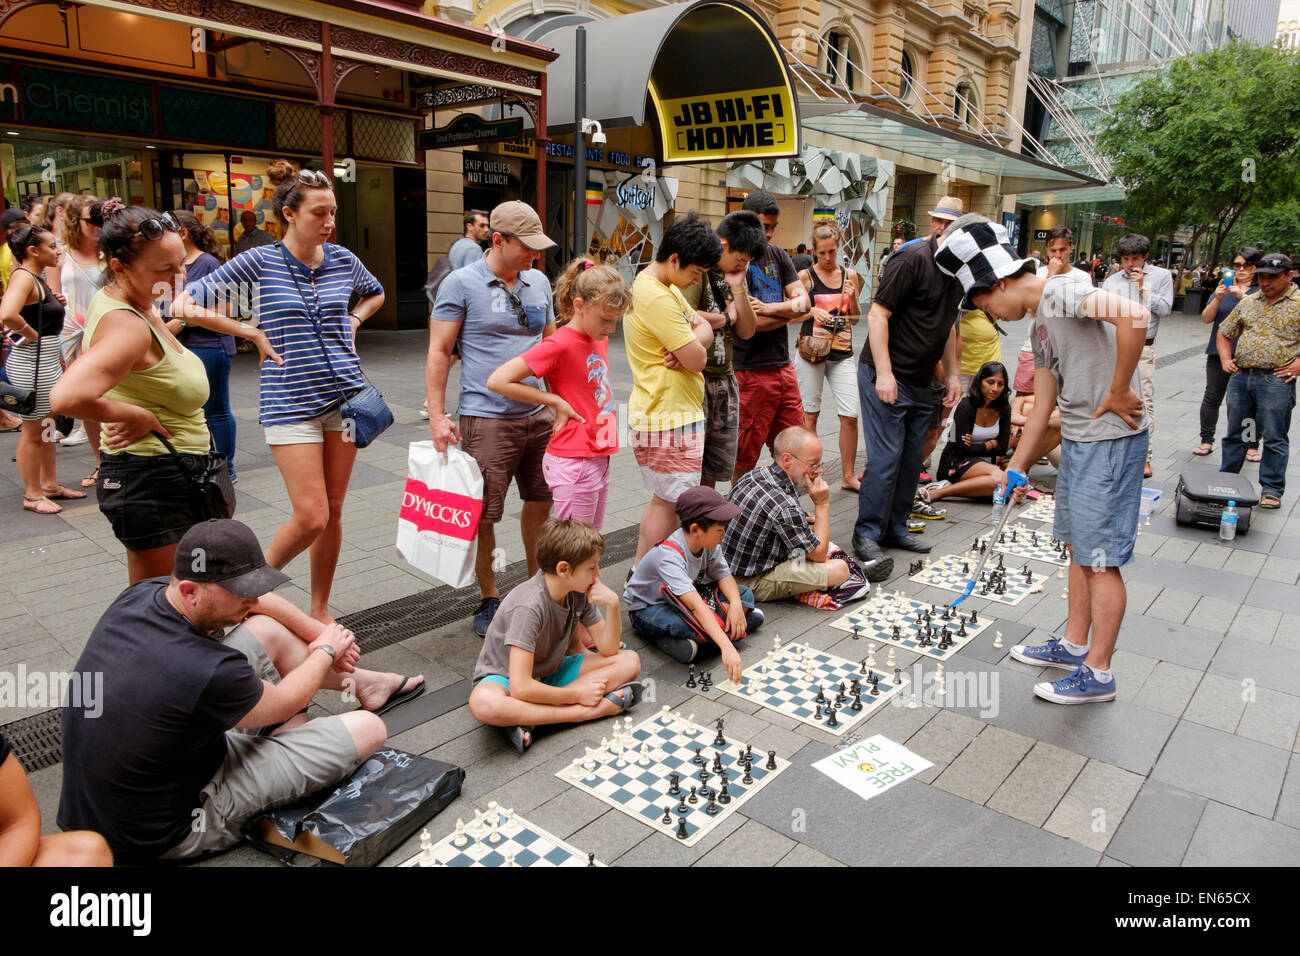 Junger Mann in einer verkehrsberuhigten Straße Simultanschach mit mehreren Personen zu spielen, während andere zusehen. Outdoor-Brettspiel; im freien; Publikum Stockfoto